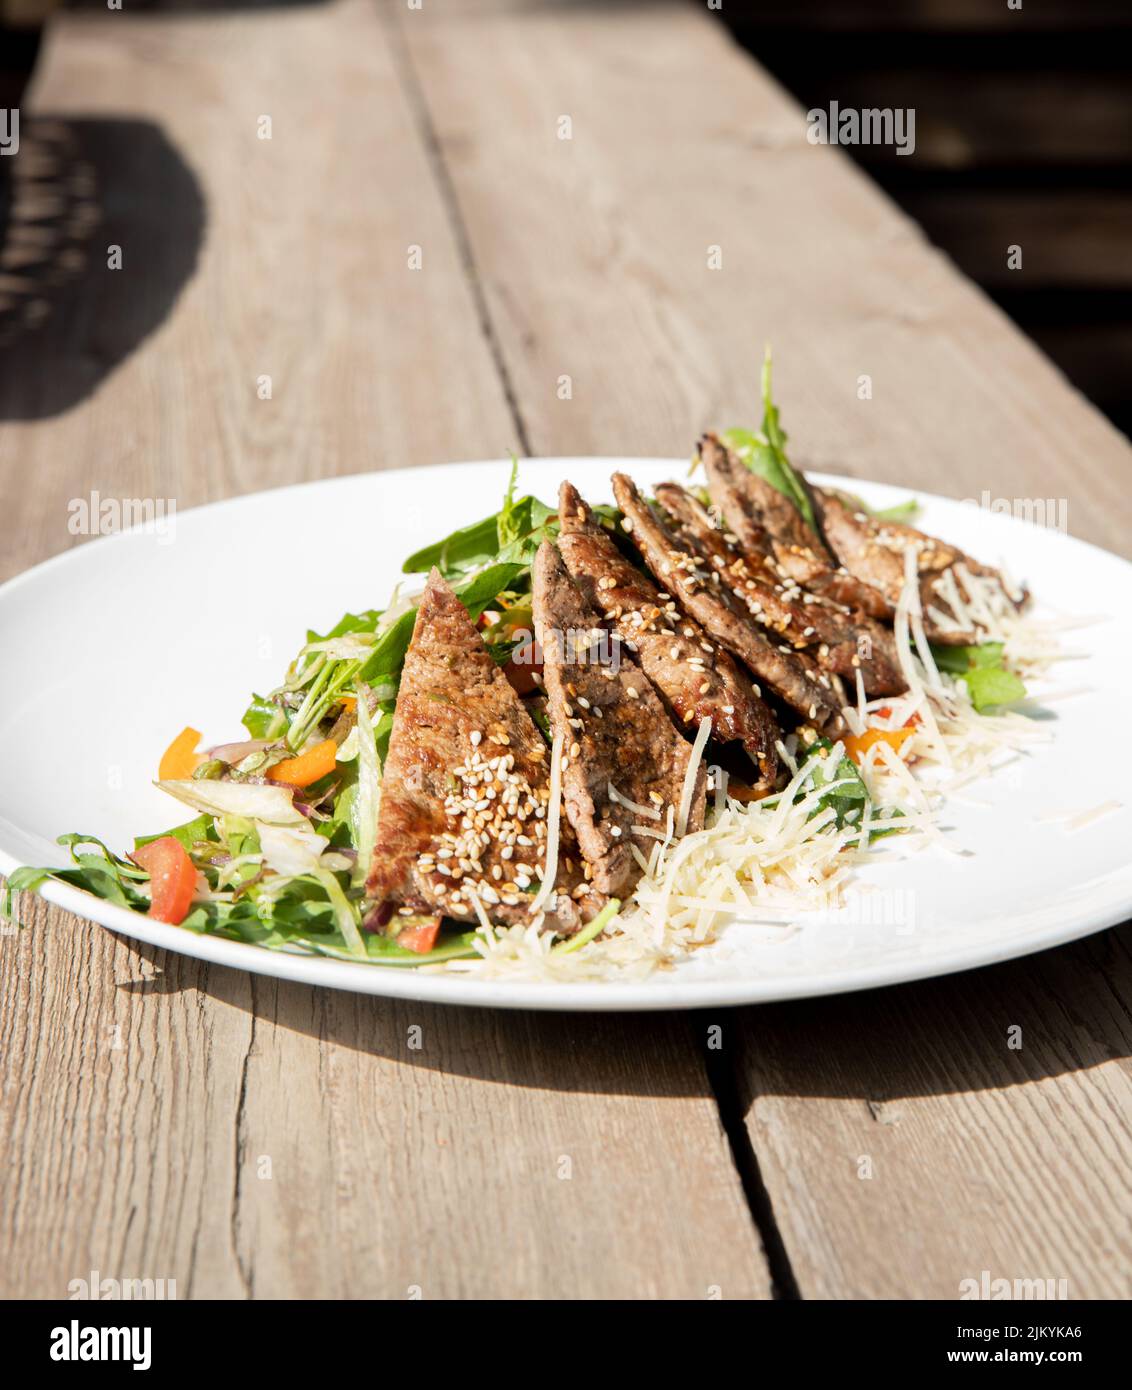 Eine vertikale Aufnahme eines leckeren Gerichts, das mit Fleisch und Gemüse auf einem weißen Teller zubereitet wird Stockfoto